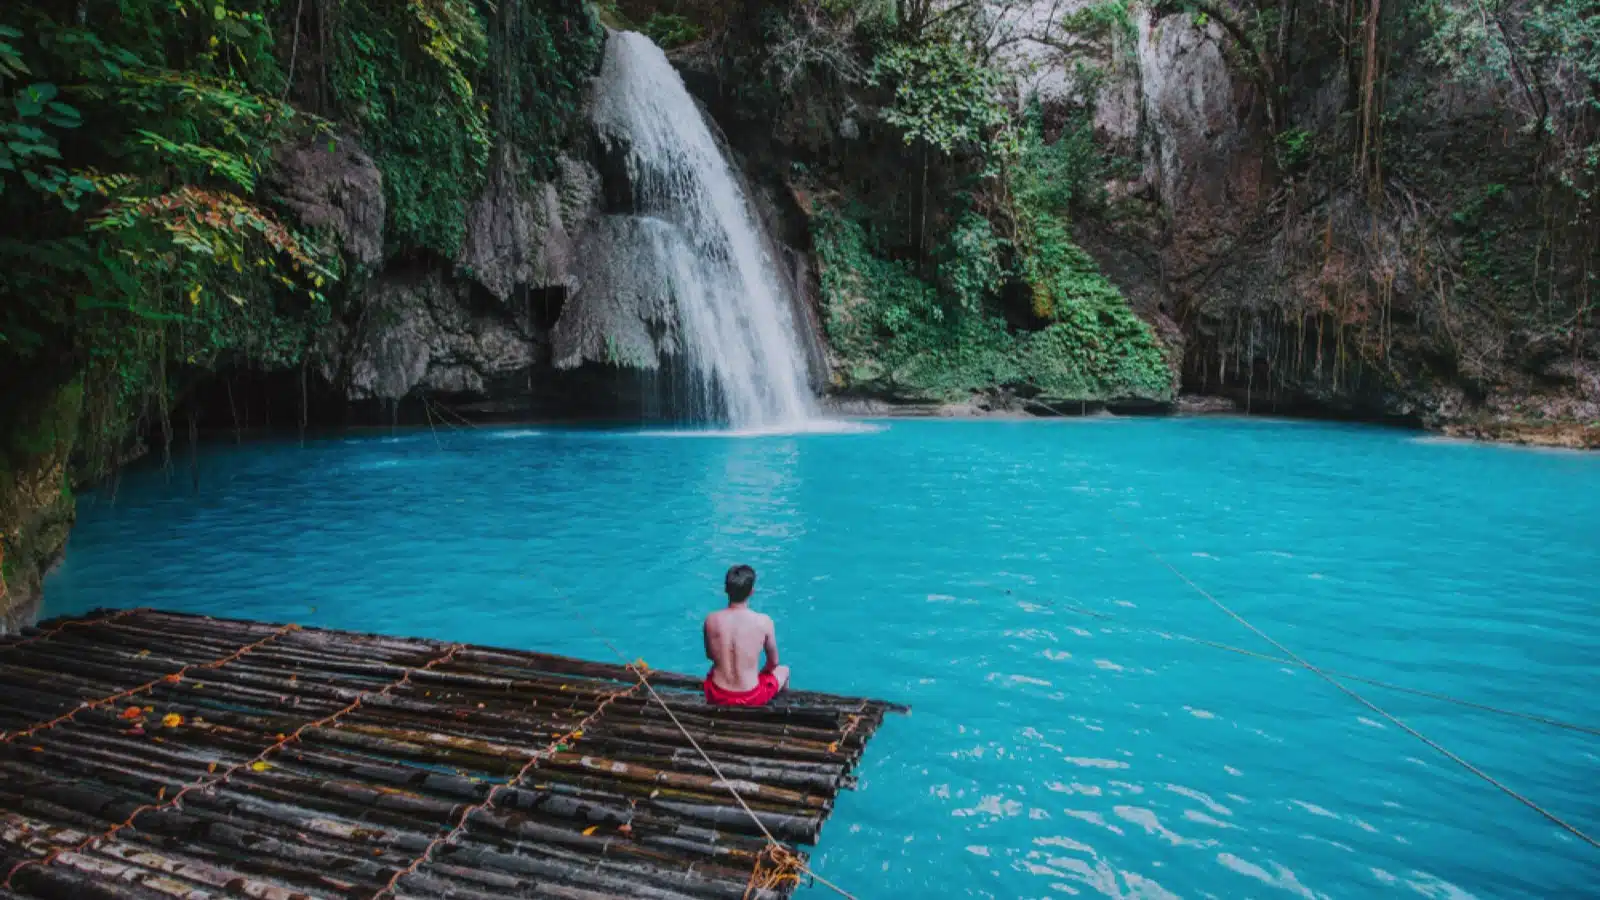 Azure Kawasan waterfall in cebu